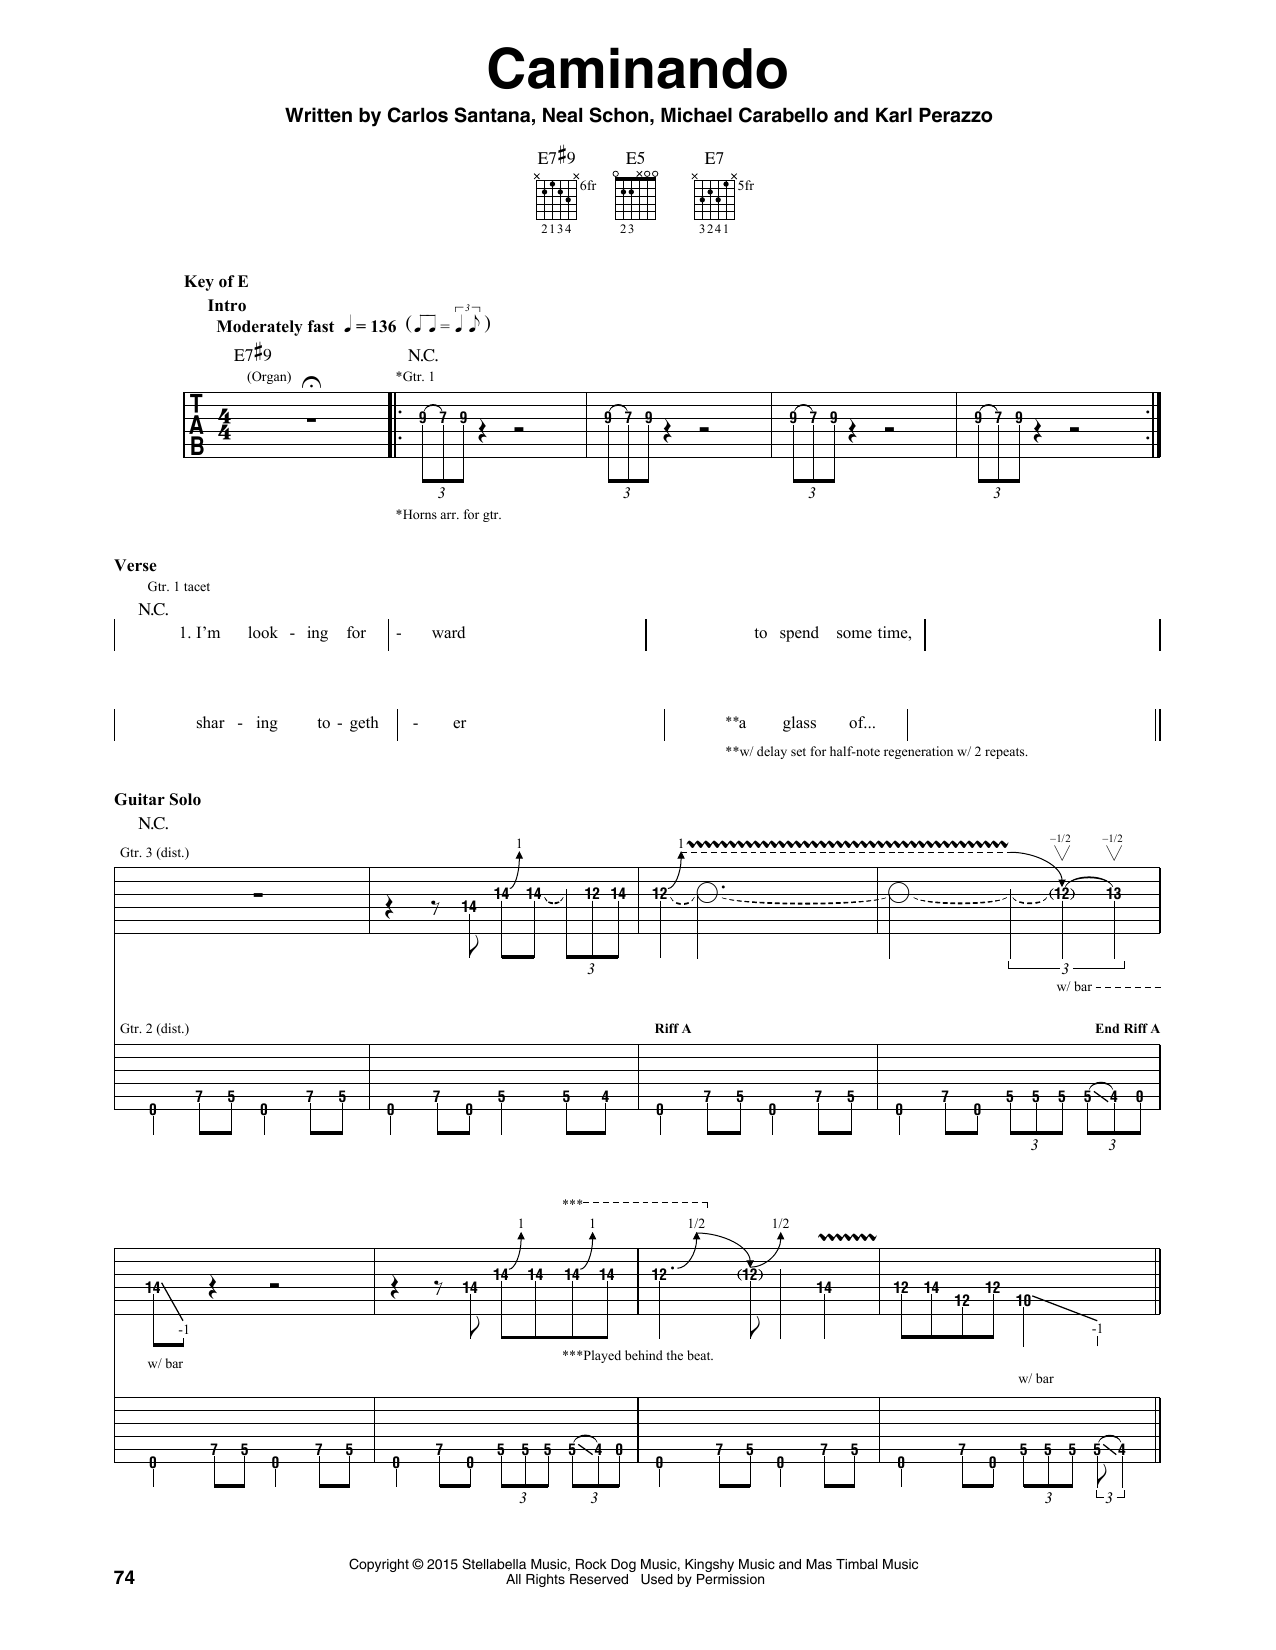 Santana Caminando Sheet Music Notes & Chords for Guitar Tab - Download or Print PDF